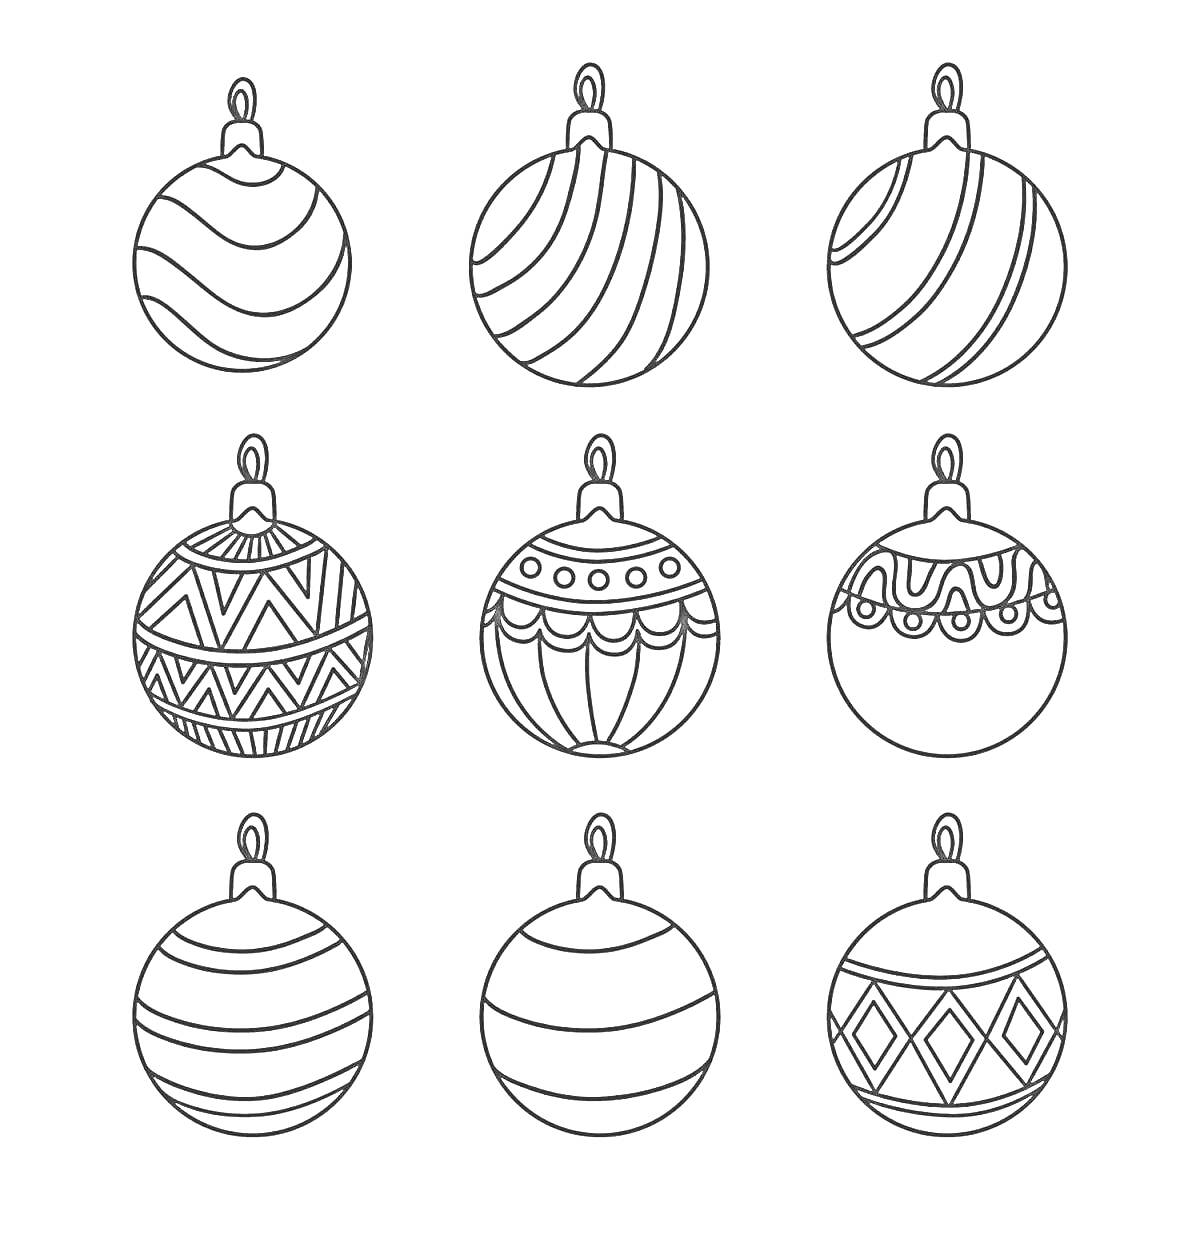 Раскраска Елочные шарики с различными узорами, включая волны, полосы, геометрические фигуры и кружевные детали, 9 штук